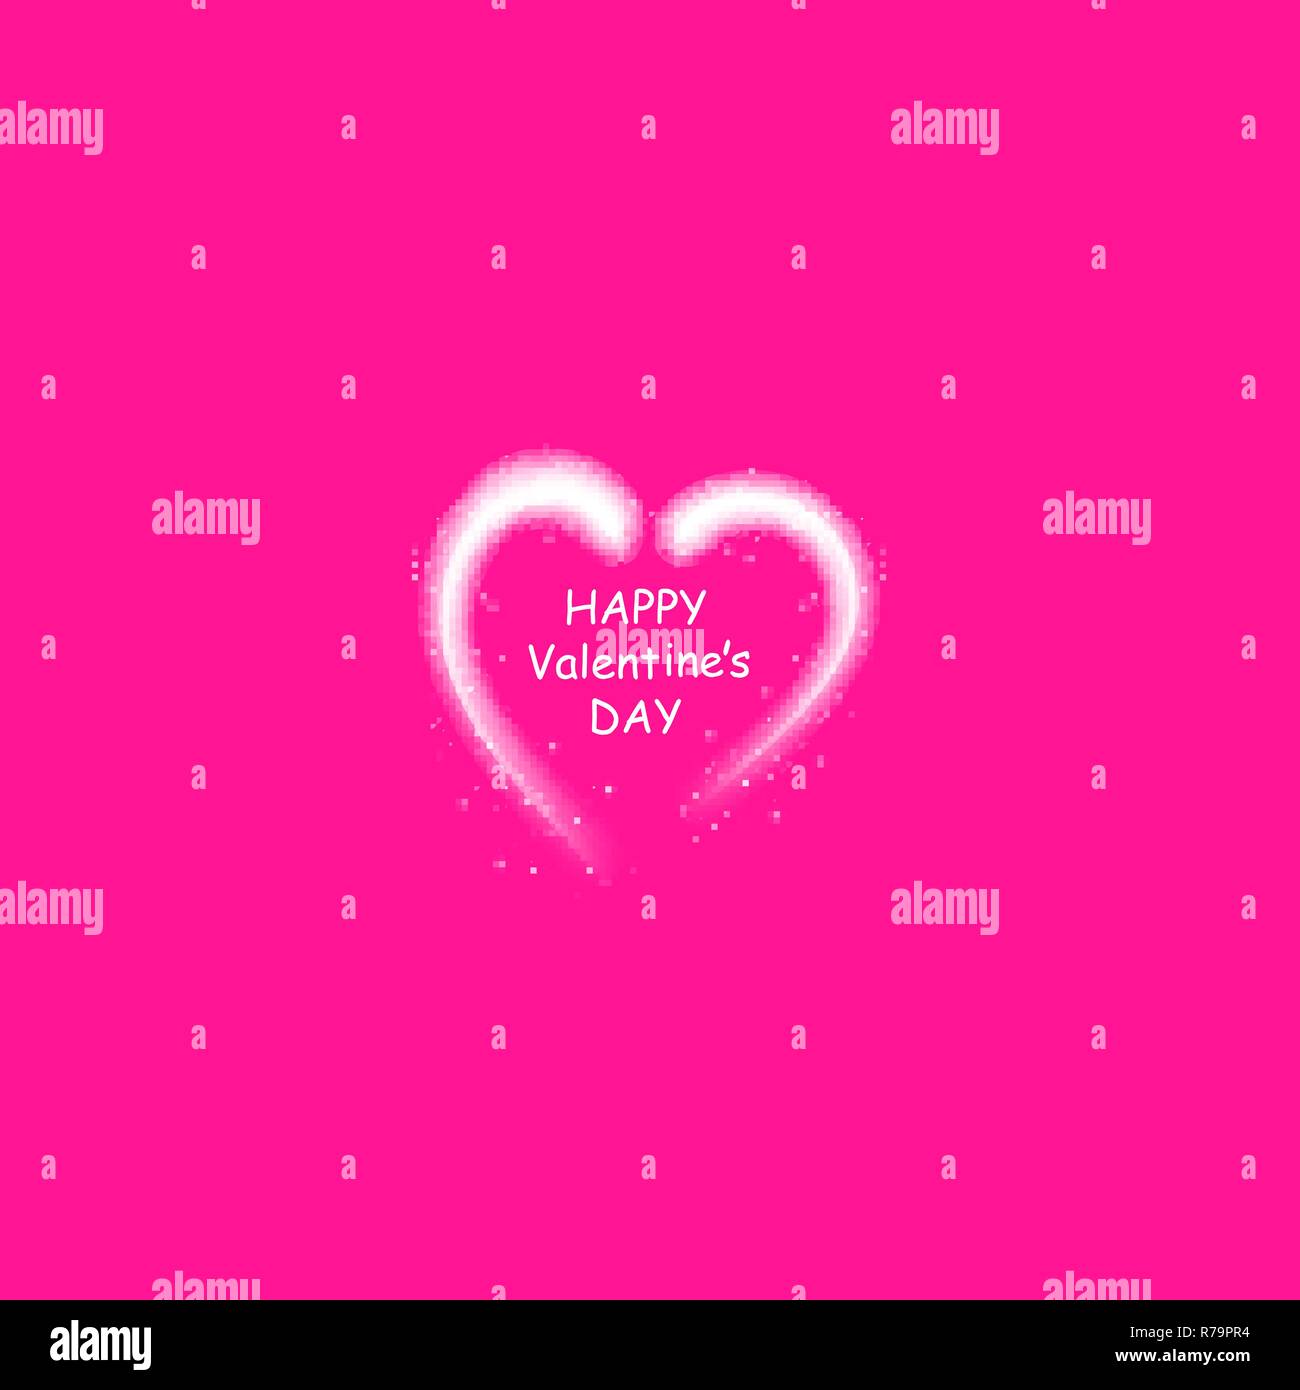 Happy Valentines Day greeting card. Io vi amo. 14 febbraio. Holiday sfondo con cuori, luce, stelle sulla plastica rosa backgraund. Illustrazione Vettoriale Illustrazione Vettoriale